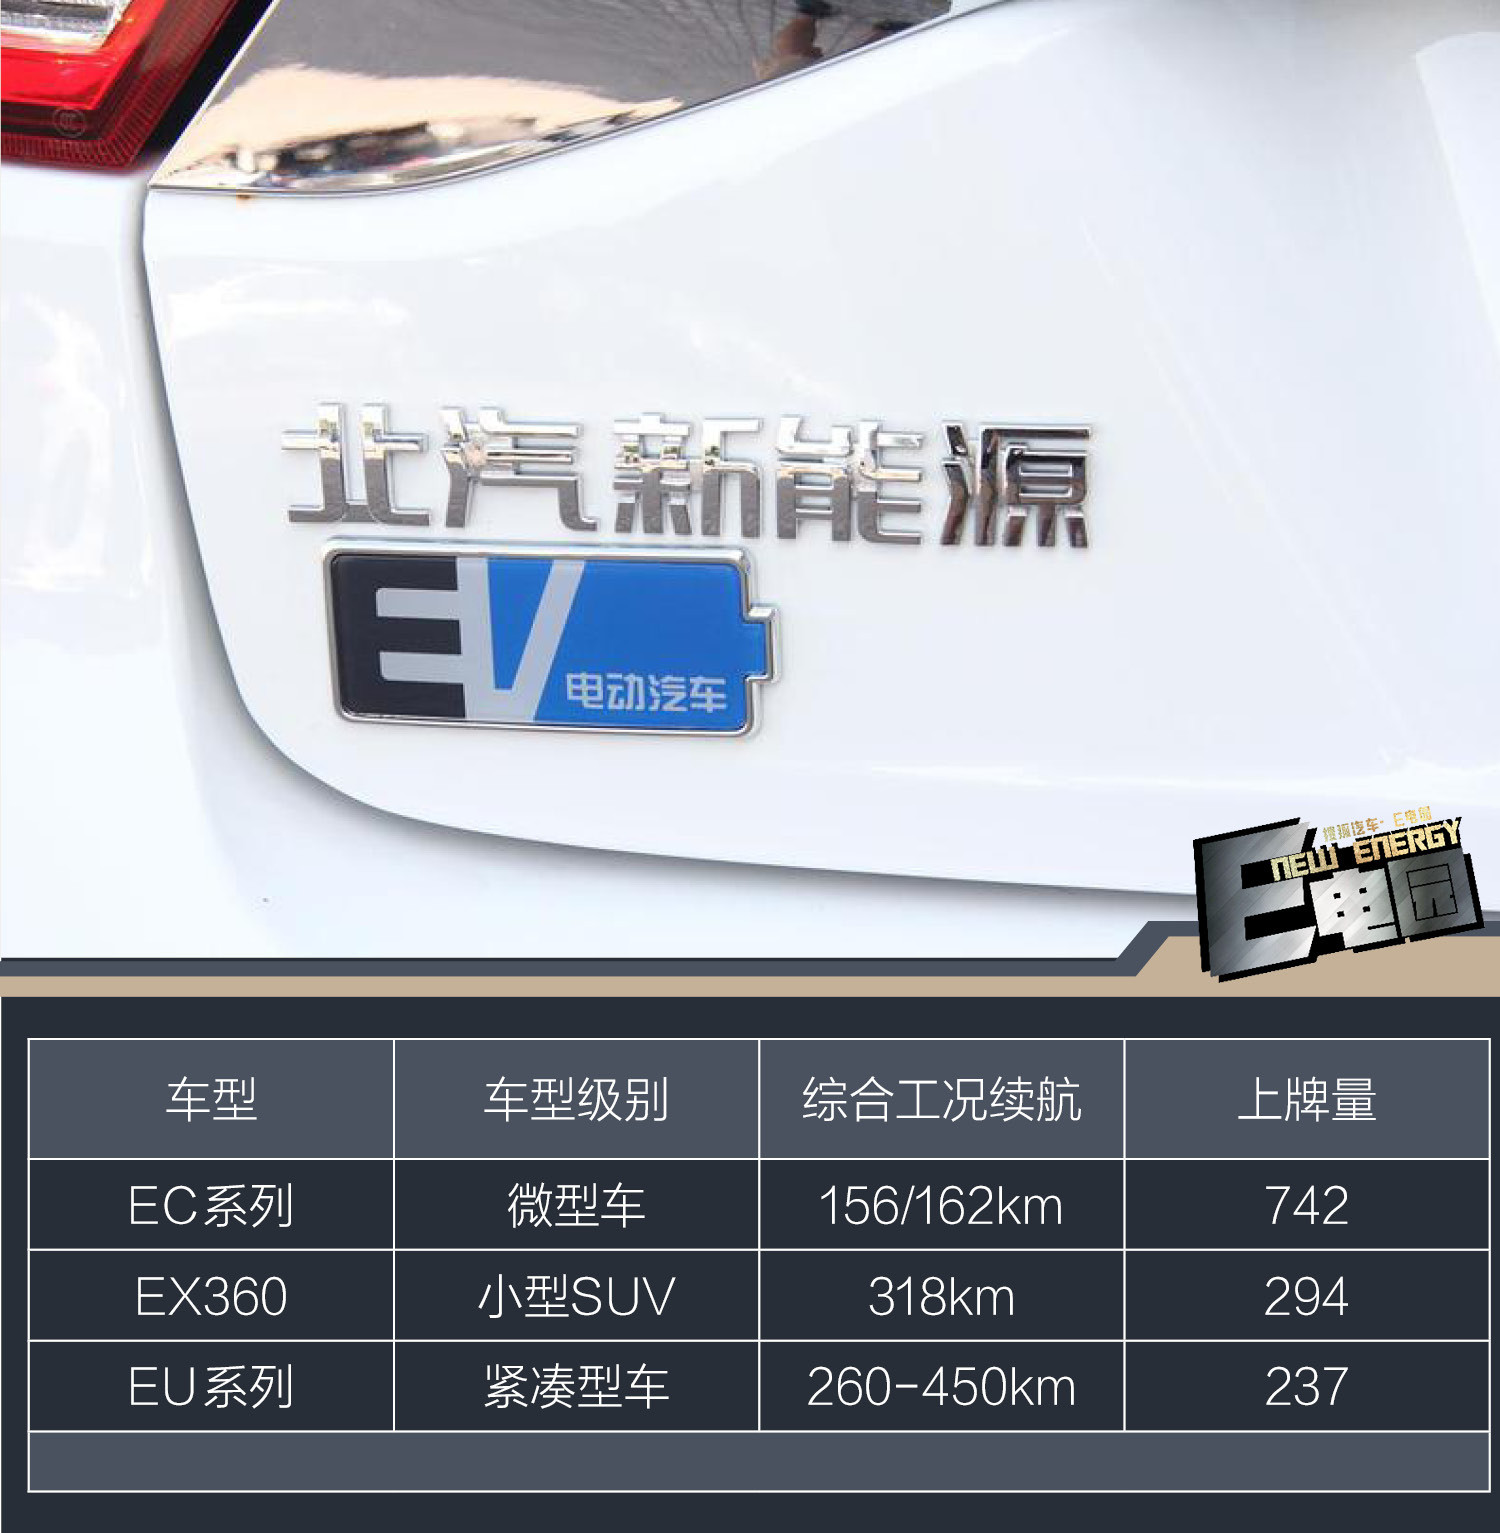 北京新能源汽车上牌量排名:北汽、比亚迪均落